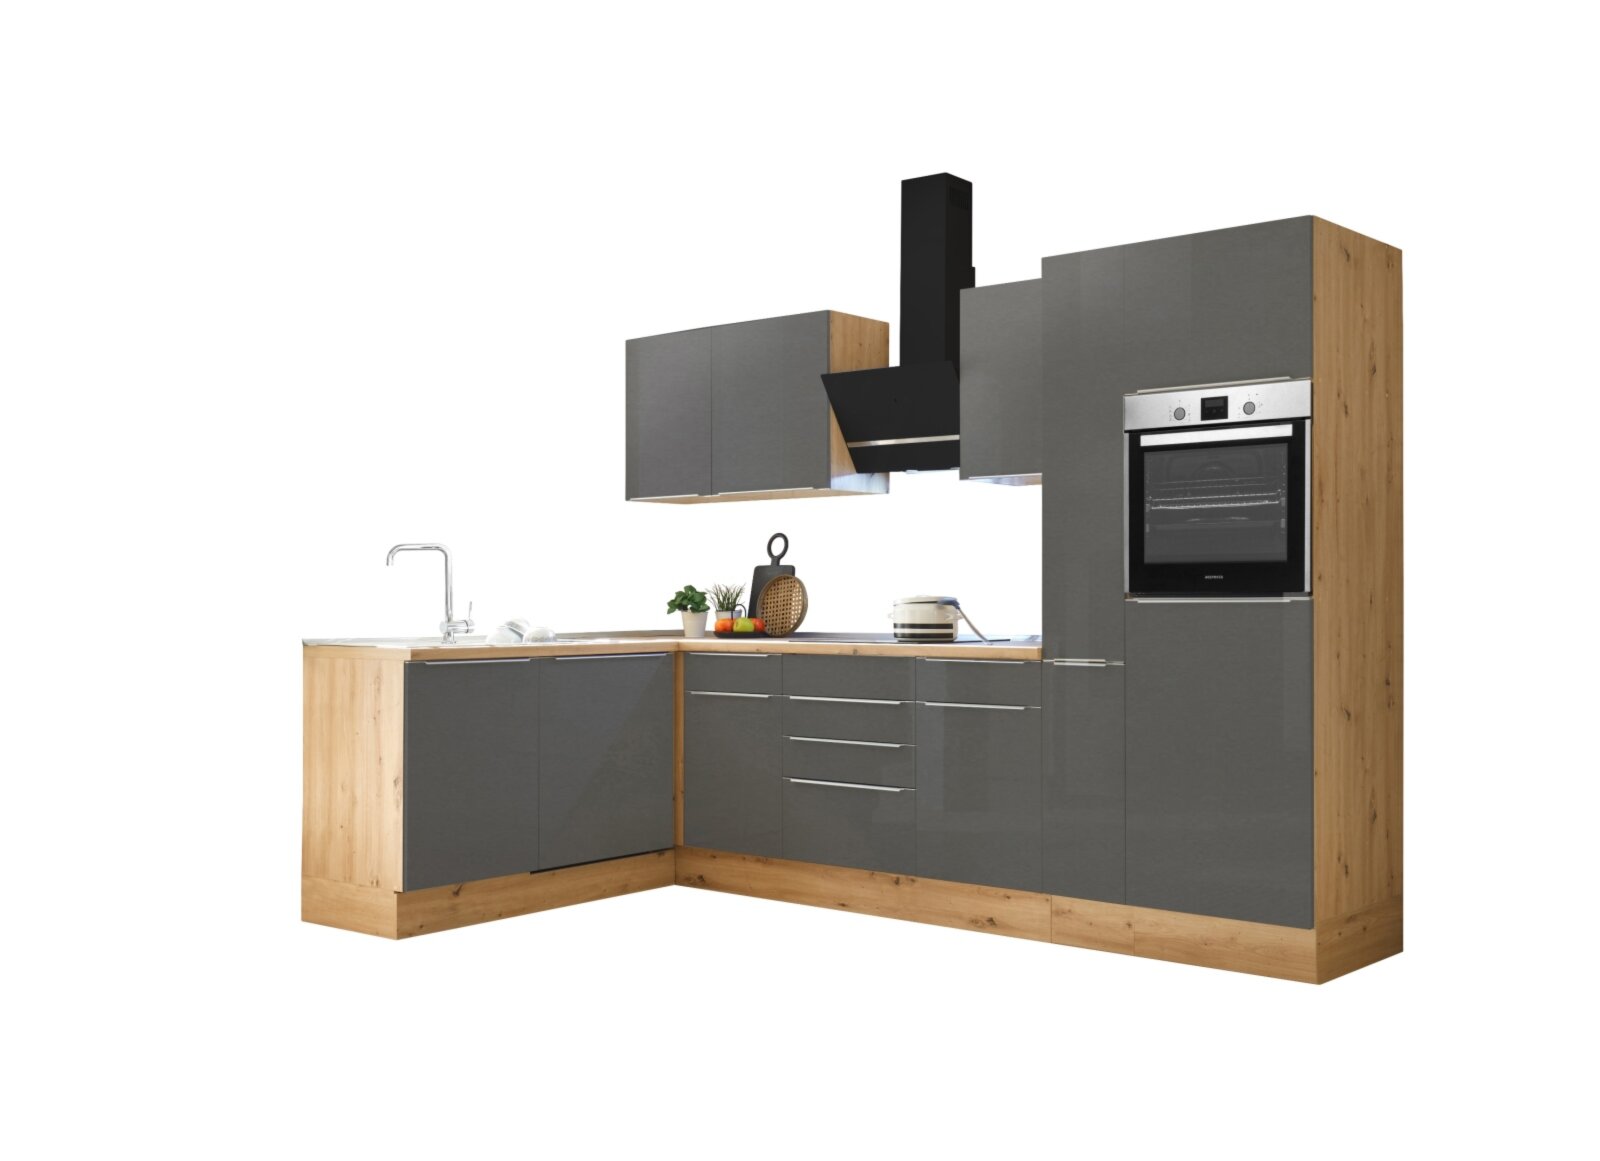 RESPEKTA Winkelküche - grau - Artisan Eiche - mit E-Geräten - 310 cm |  Online bei ROLLER kaufen